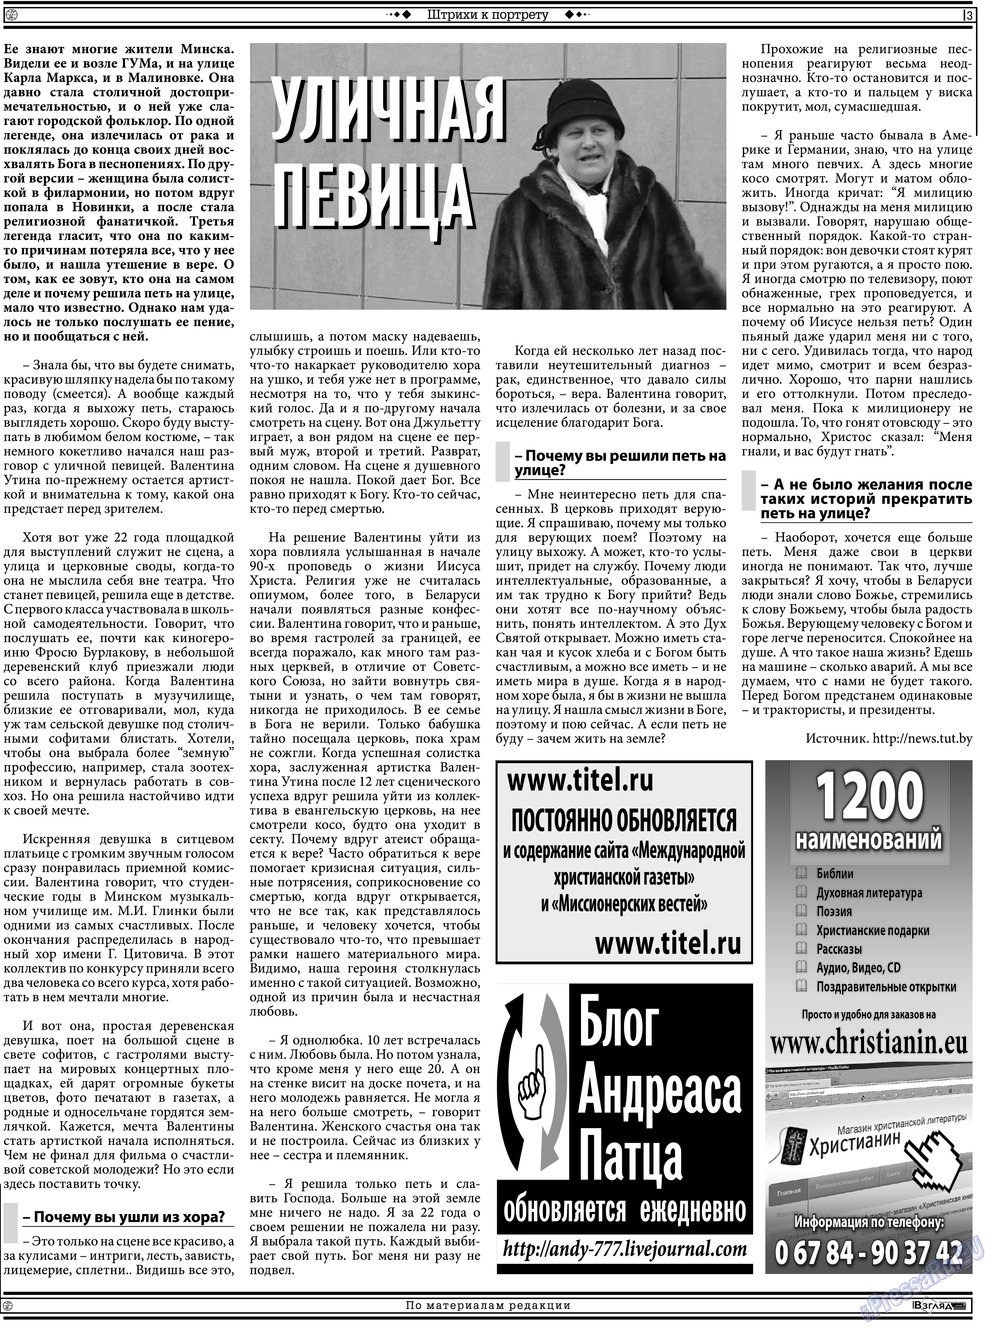 Христианская газета, газета. 2013 №5 стр.17